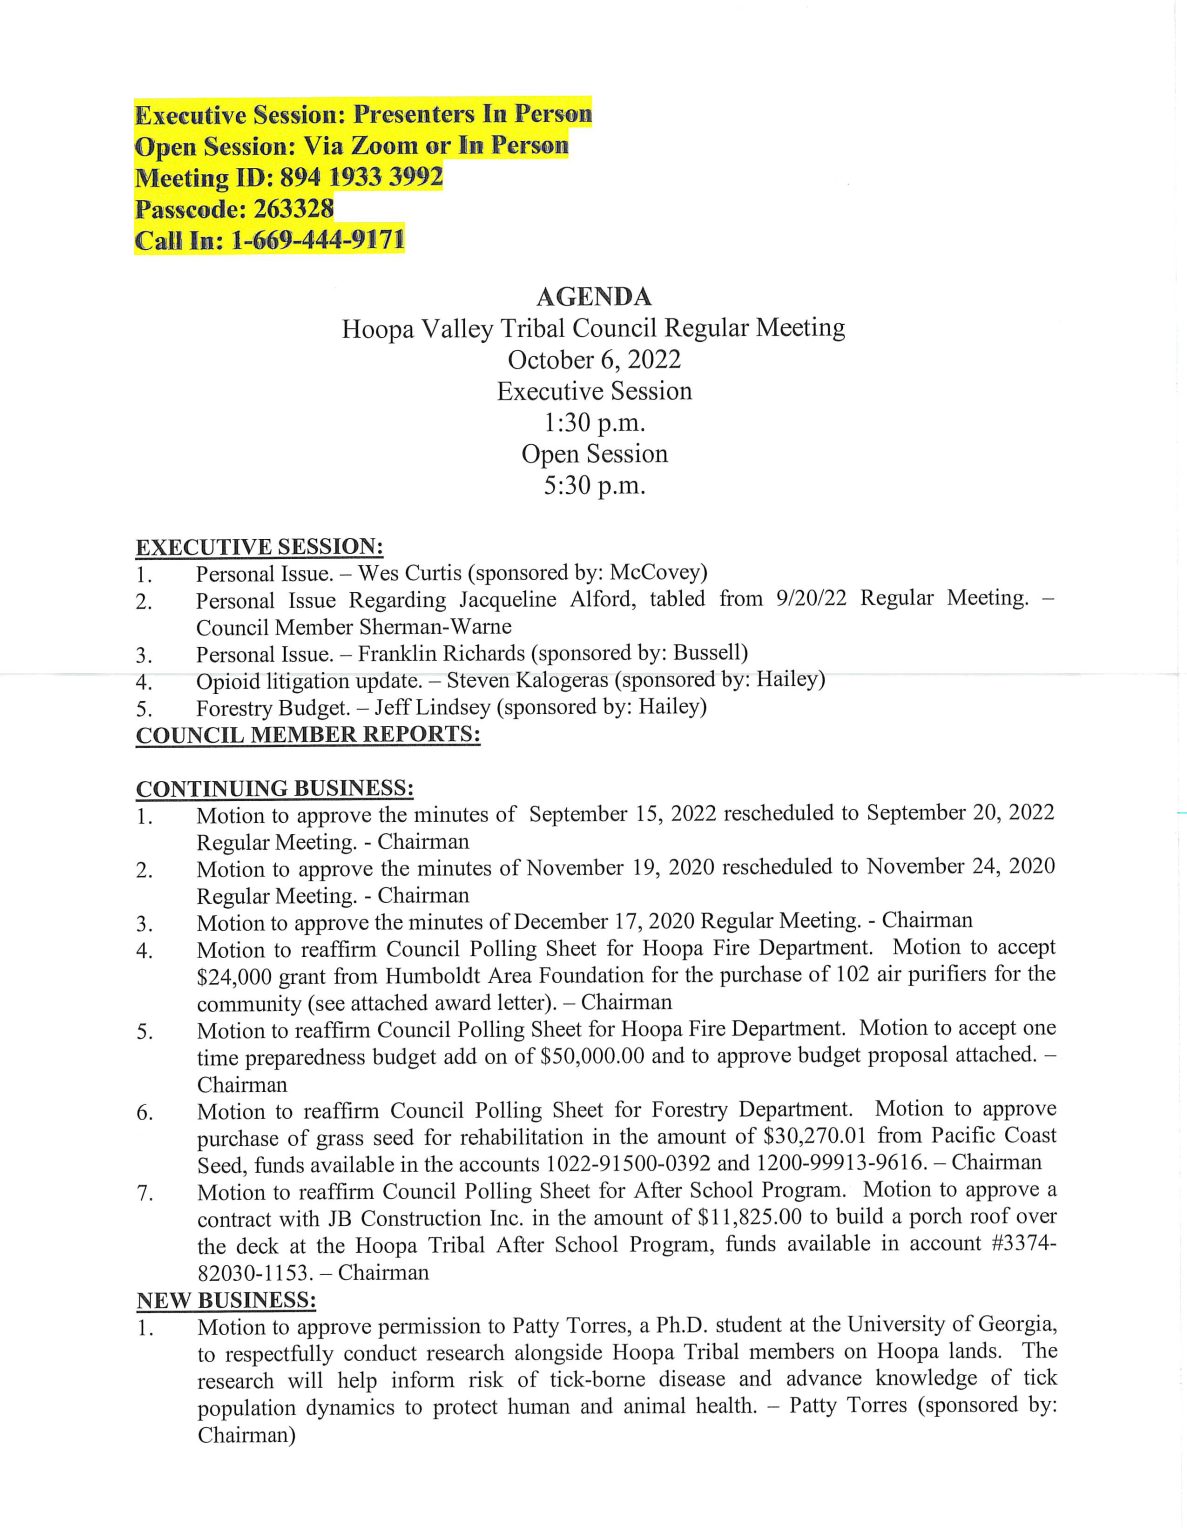 10/6/2022 Regular Meeting Agenda | Hoopa Valley Tribe